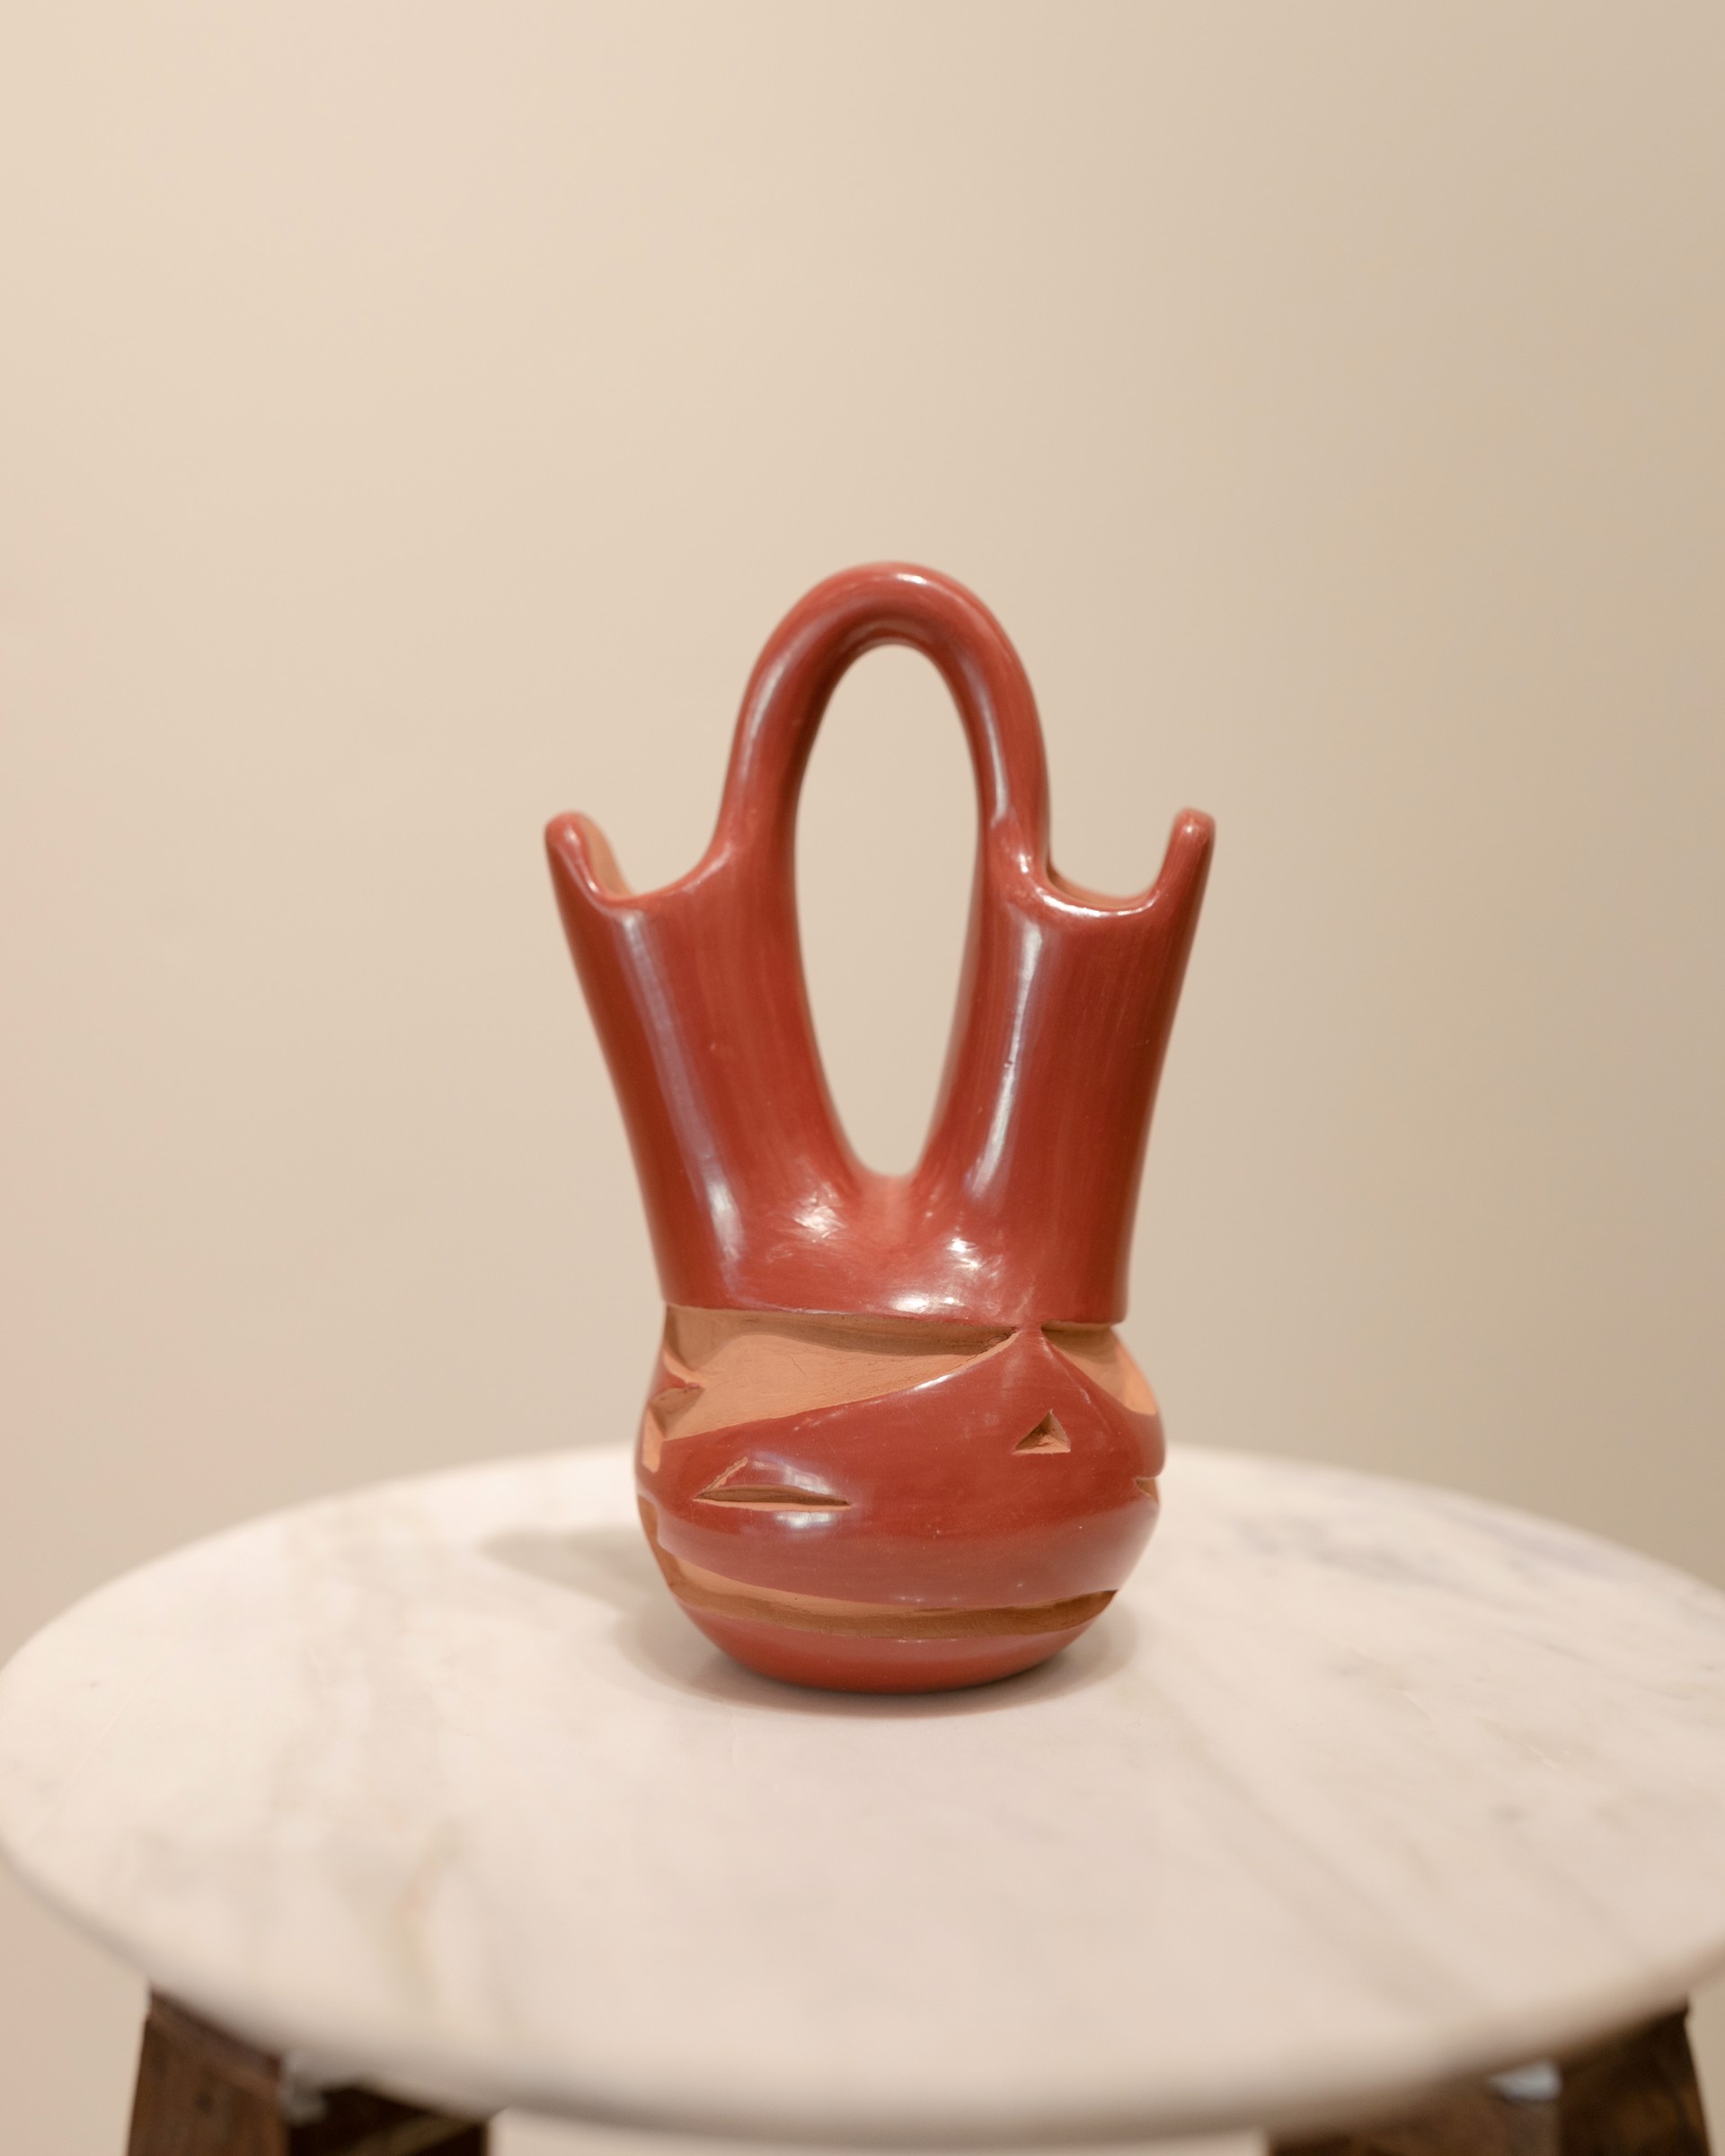 Red Wedding Vase #4 by Richard Hendricks